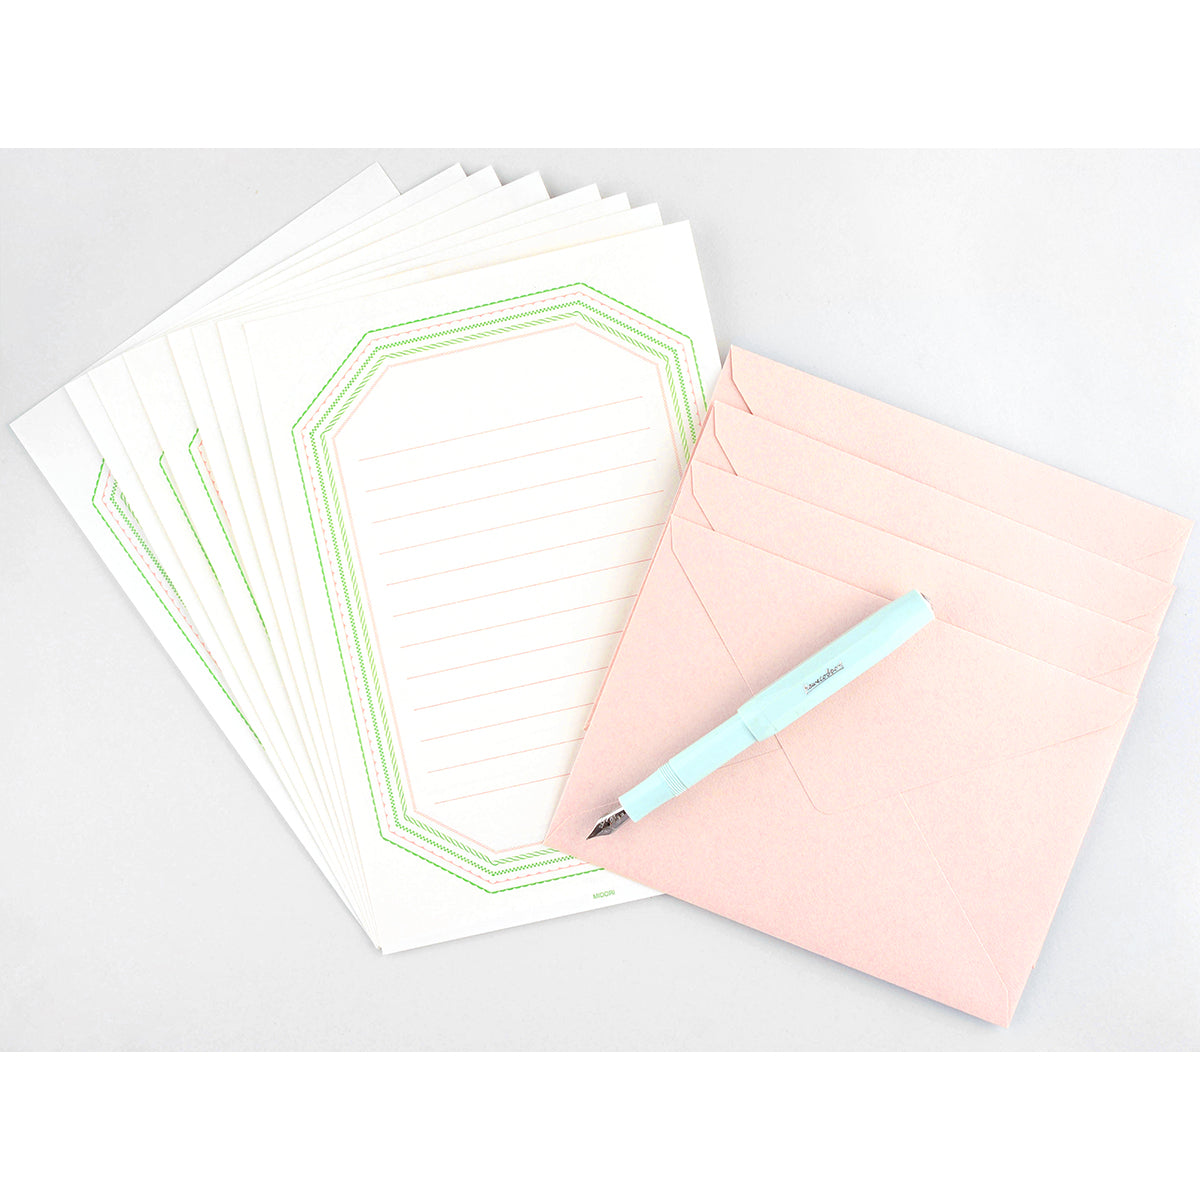 Midori Letterpress Frame Pink Letter Set 